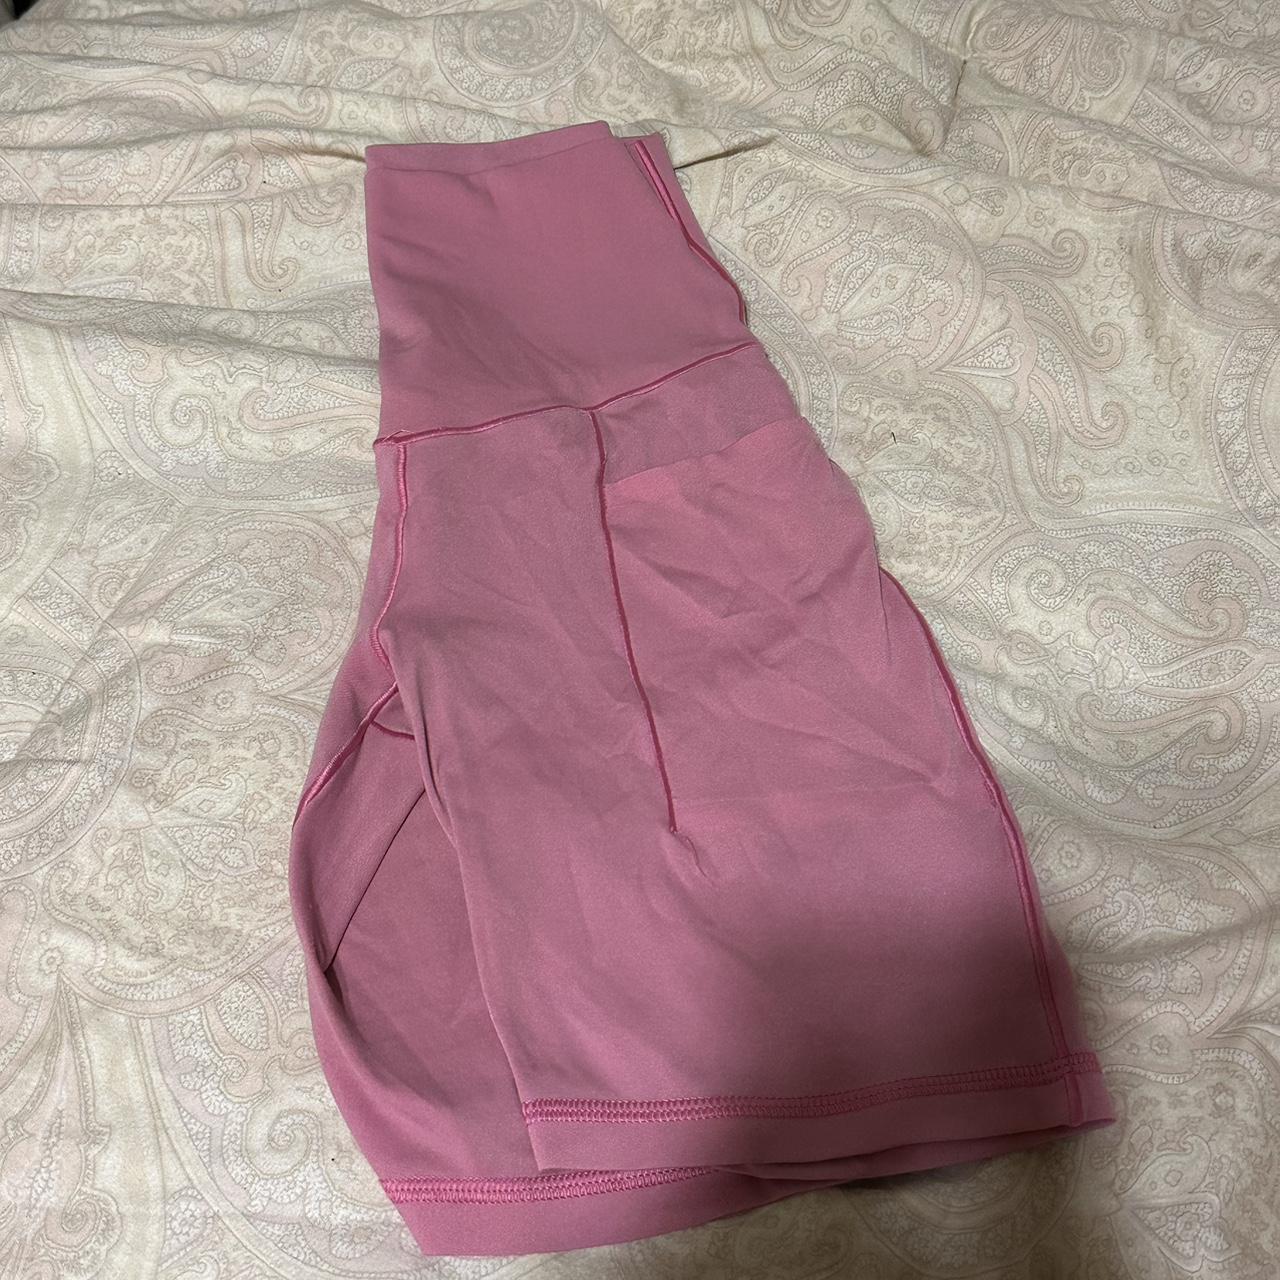 Aerie offline hot pink biker shorts Size XS slight... - Depop